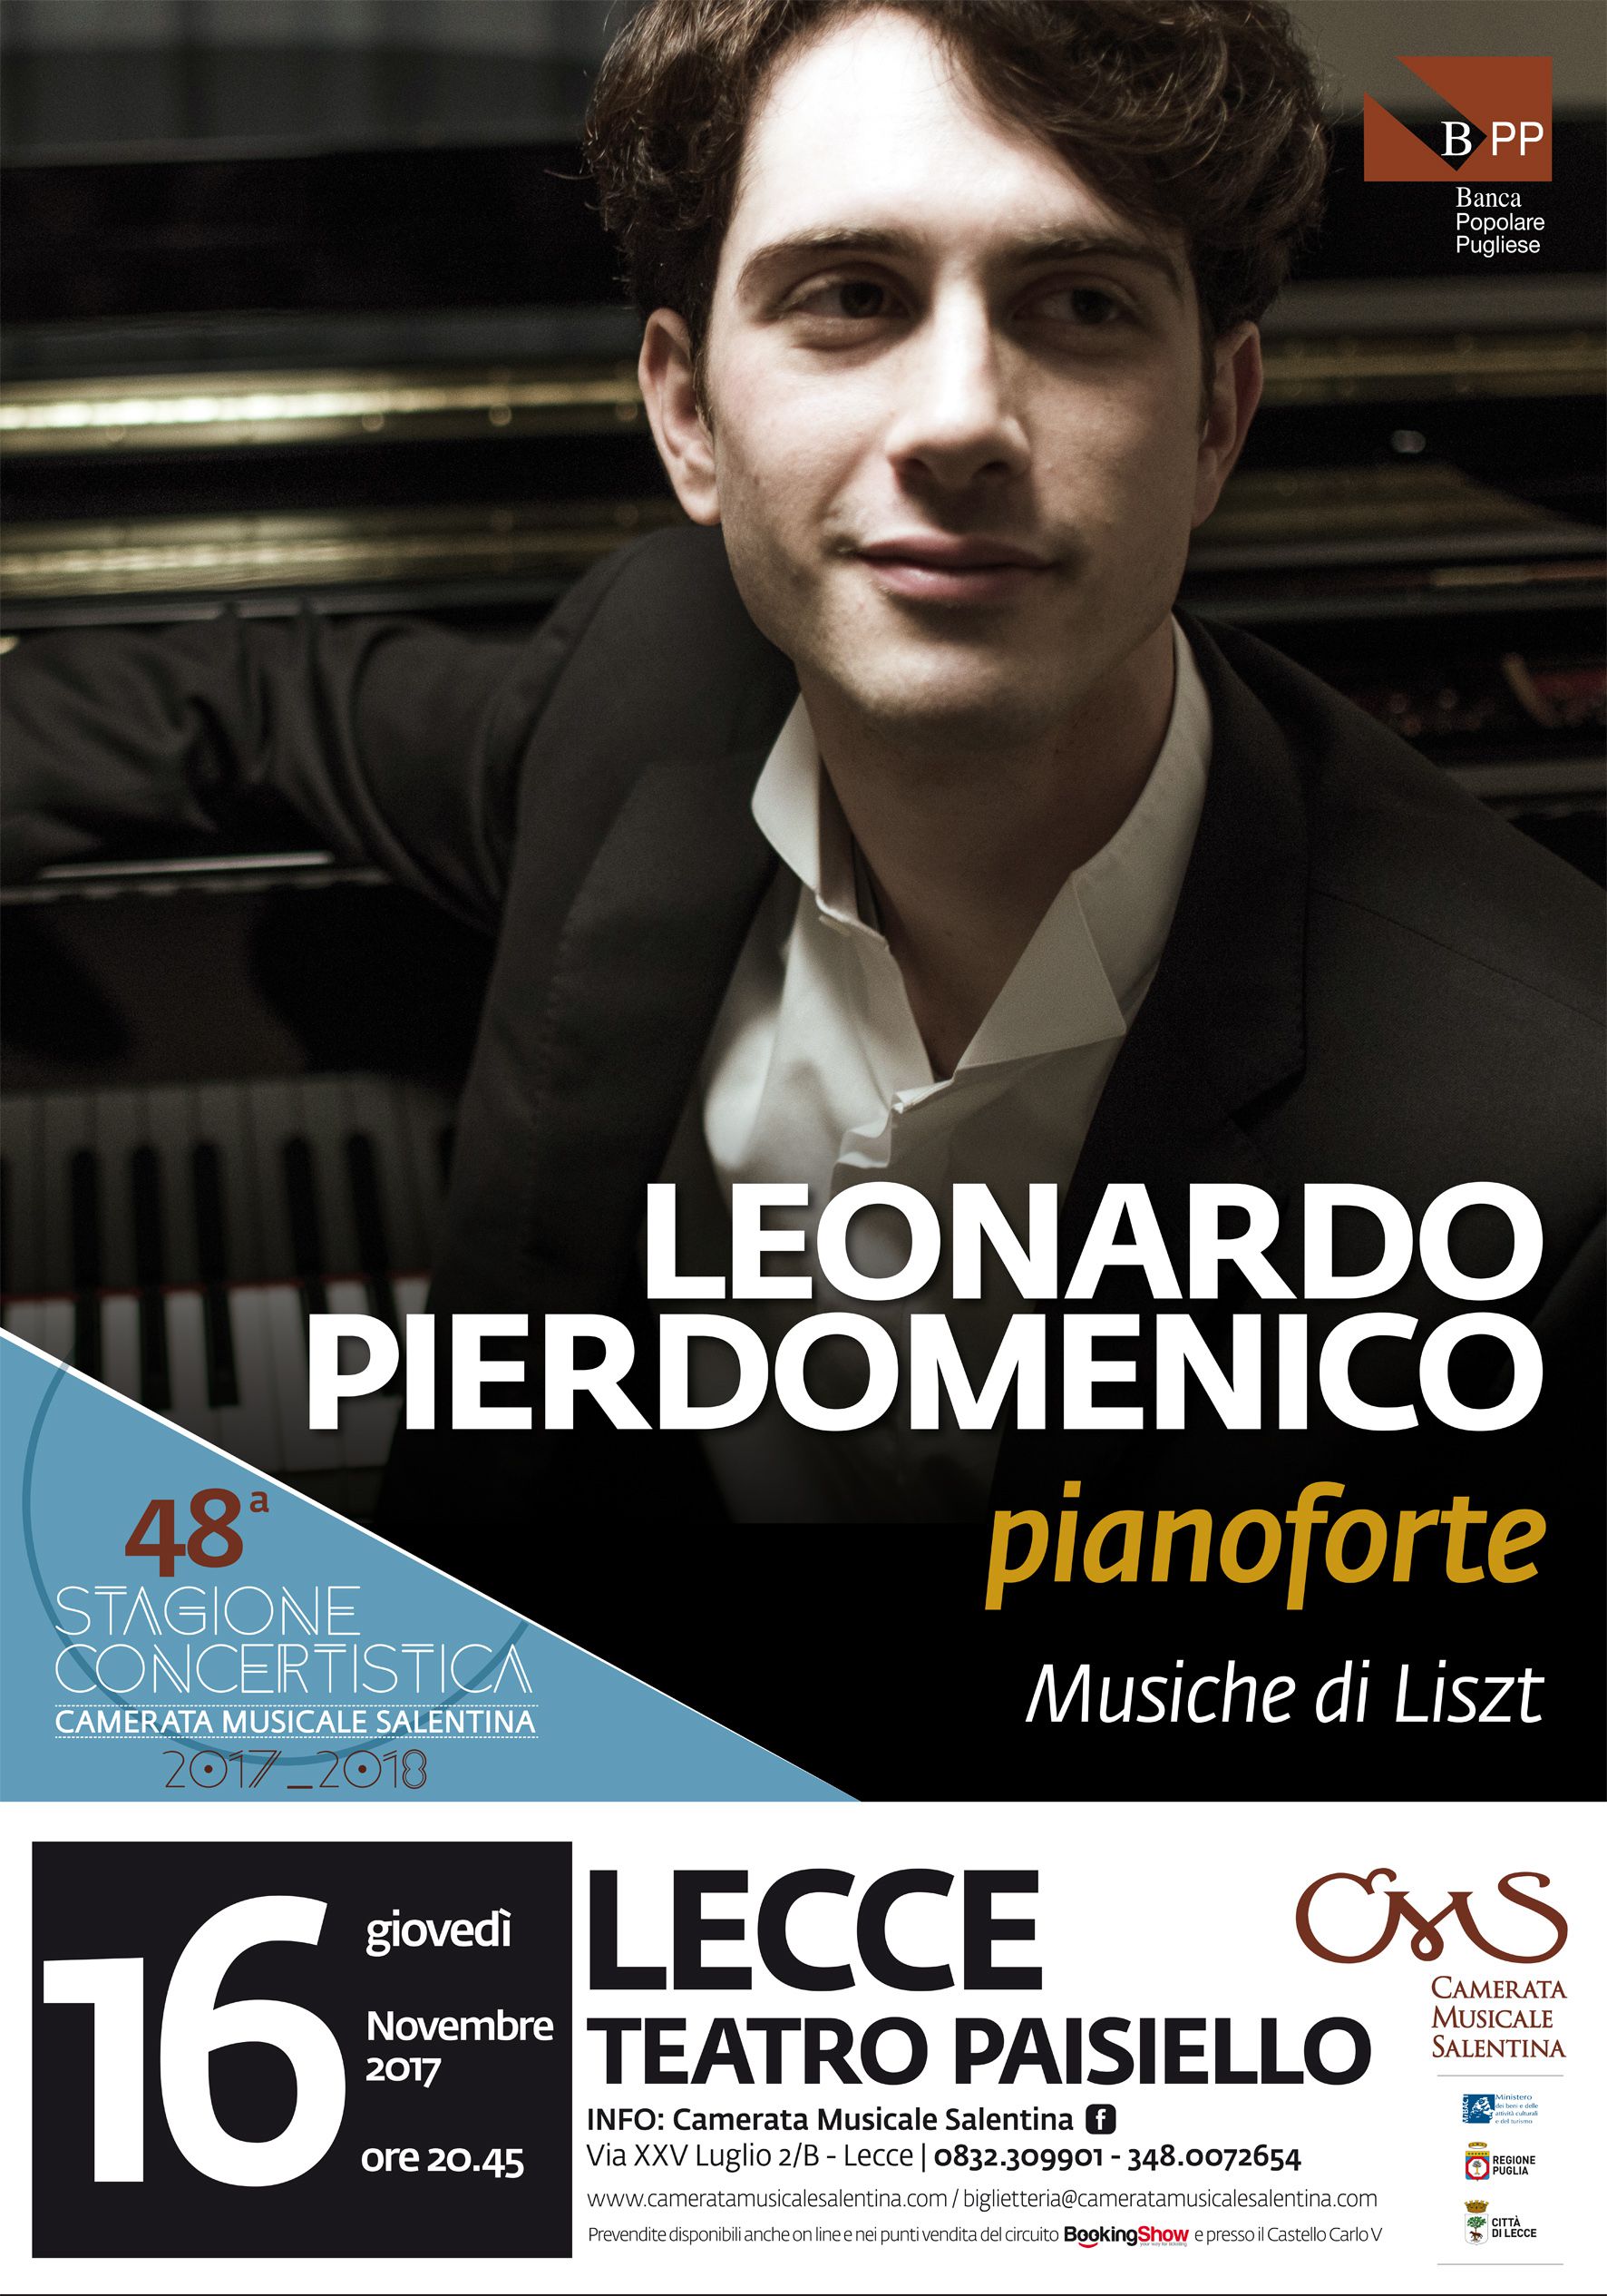 Leonardo Pierdomenico, pianoforte